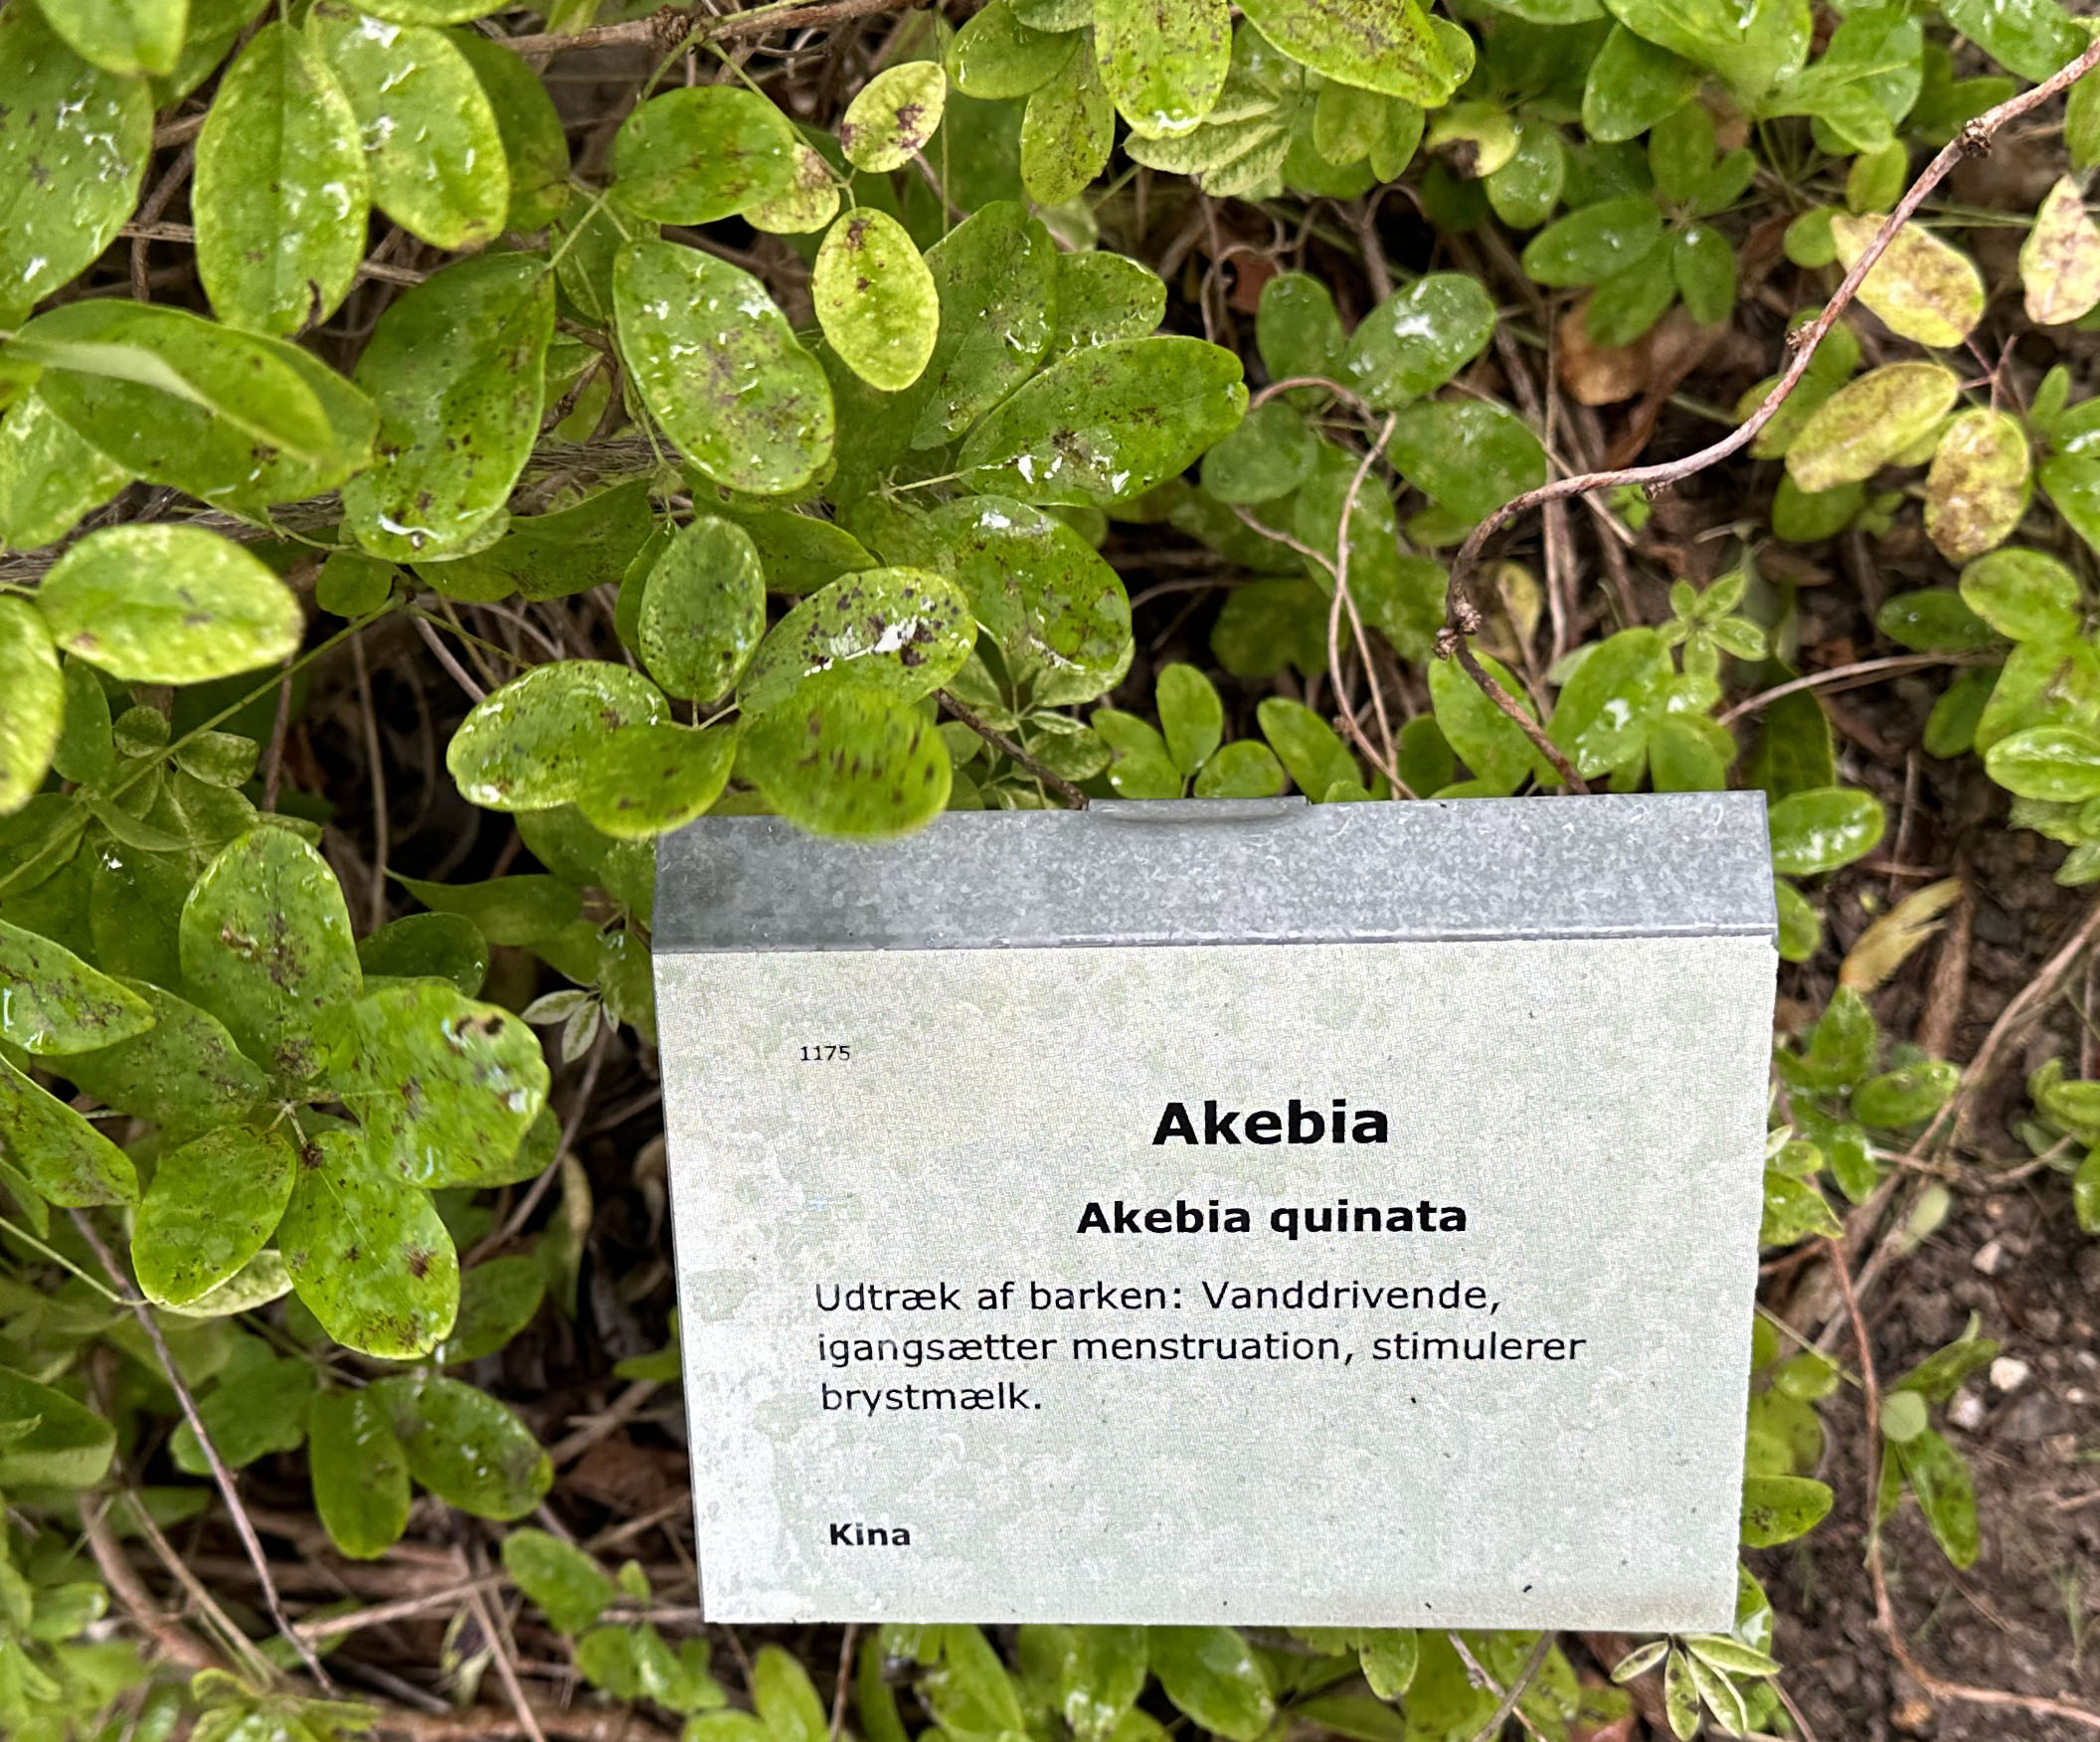 Akebia i Haven for urin- og kønsveje. 